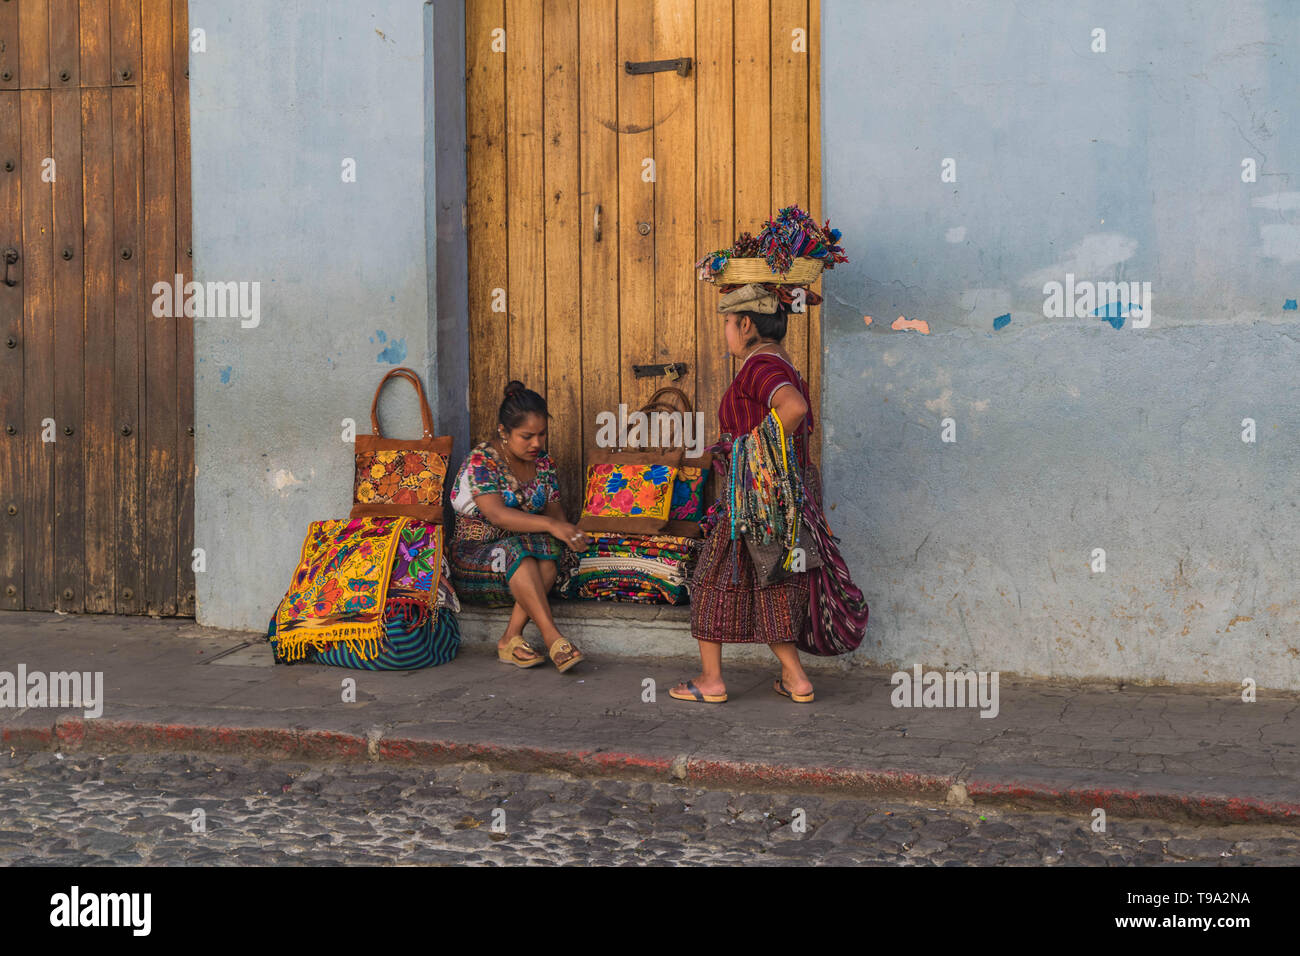 Les vendeurs de rue, deux femmes en costume traditionnel, l'un avec un panier sur la tête, la vente de marchandises guatémaltèque sur une rue pavée de Antigua Guatemala Banque D'Images